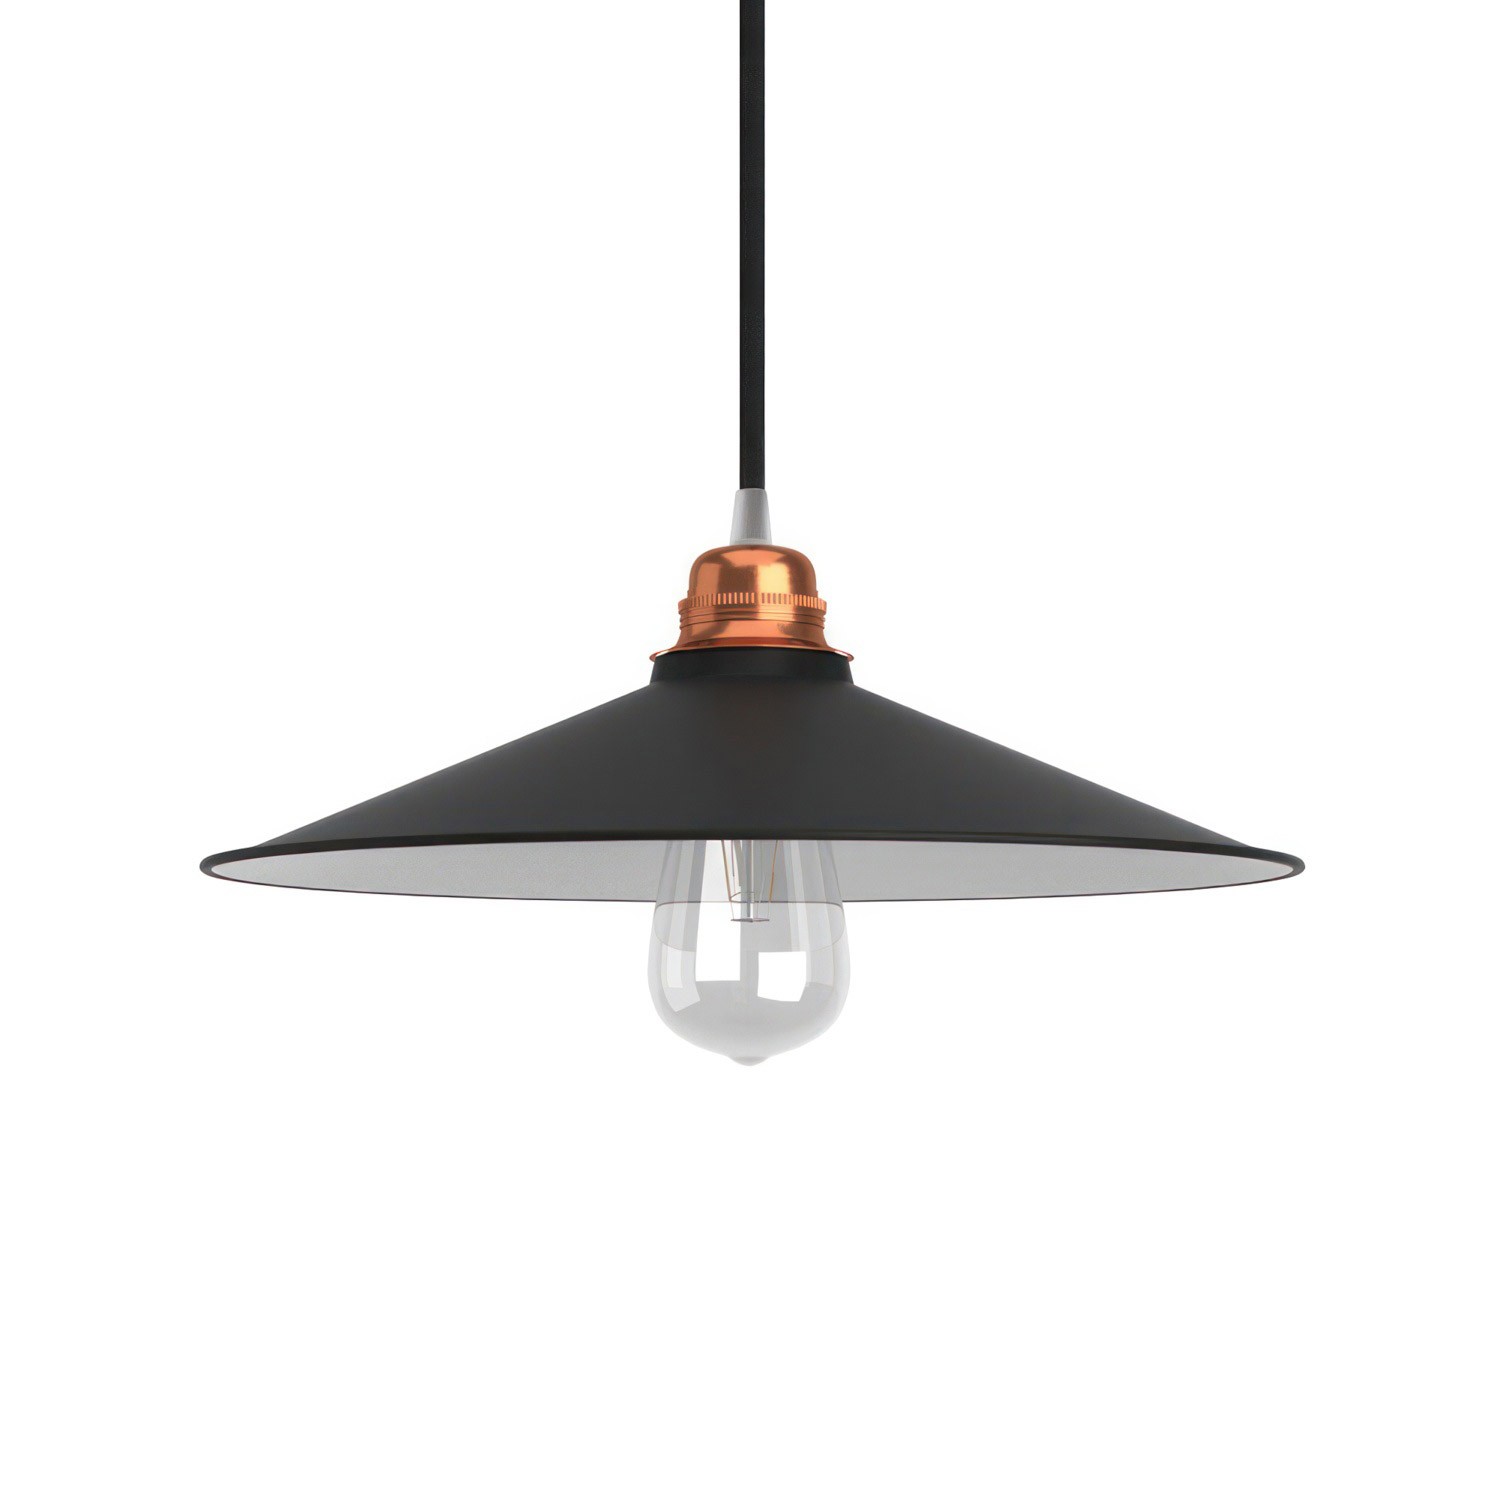 Lampenschirm Swing aus lackiertem Metall mit E27 Anschluss